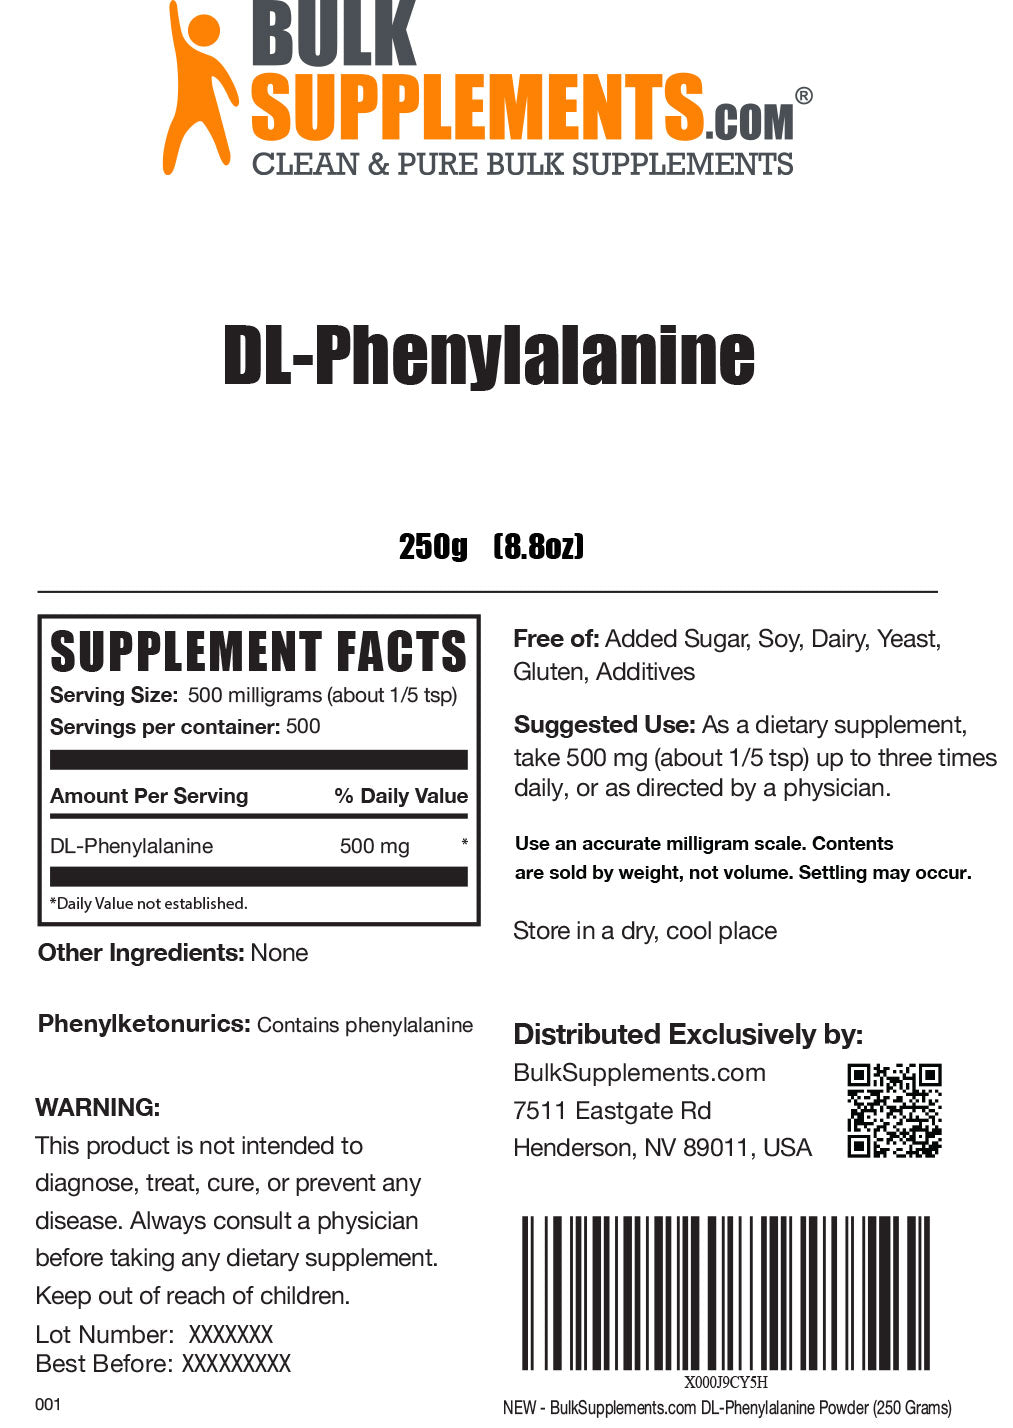 DL-Phenylalanine powder label 250g